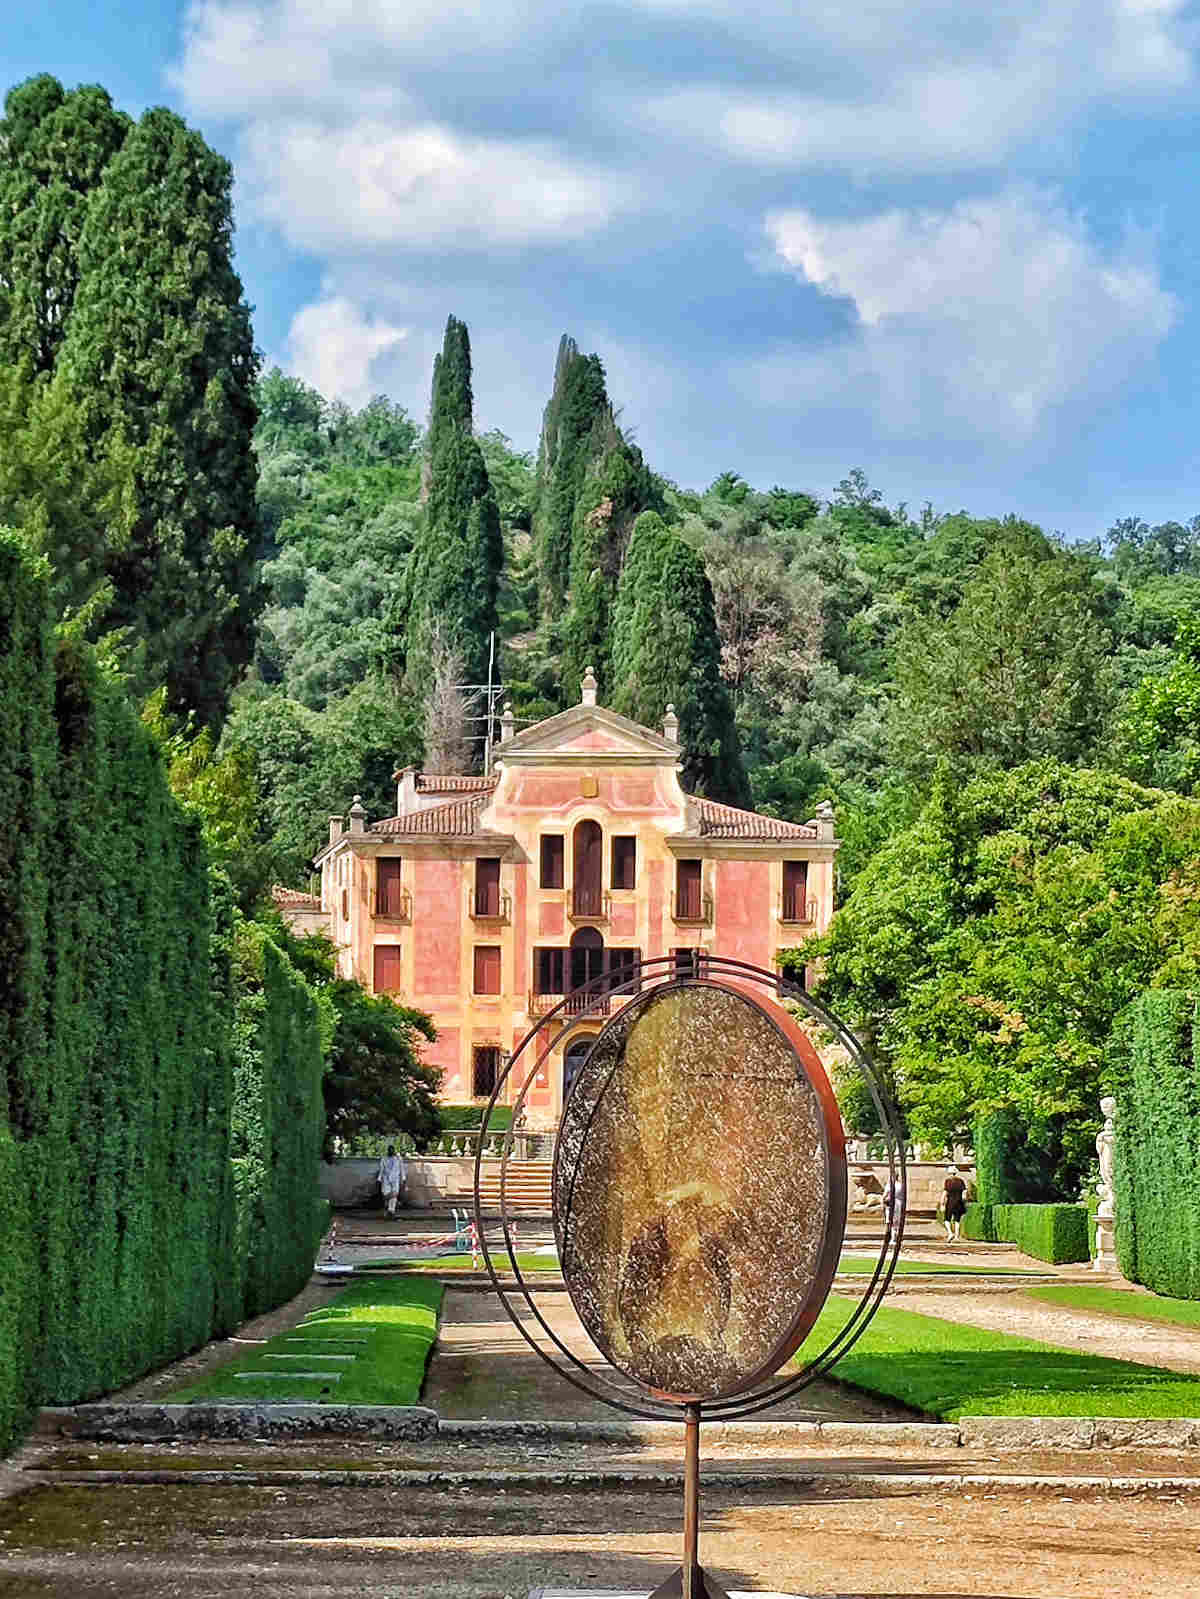 Cosa vedere nei Giardini di Villa Barbarigo a Valsanzibio: La Villa e i Viali alberati